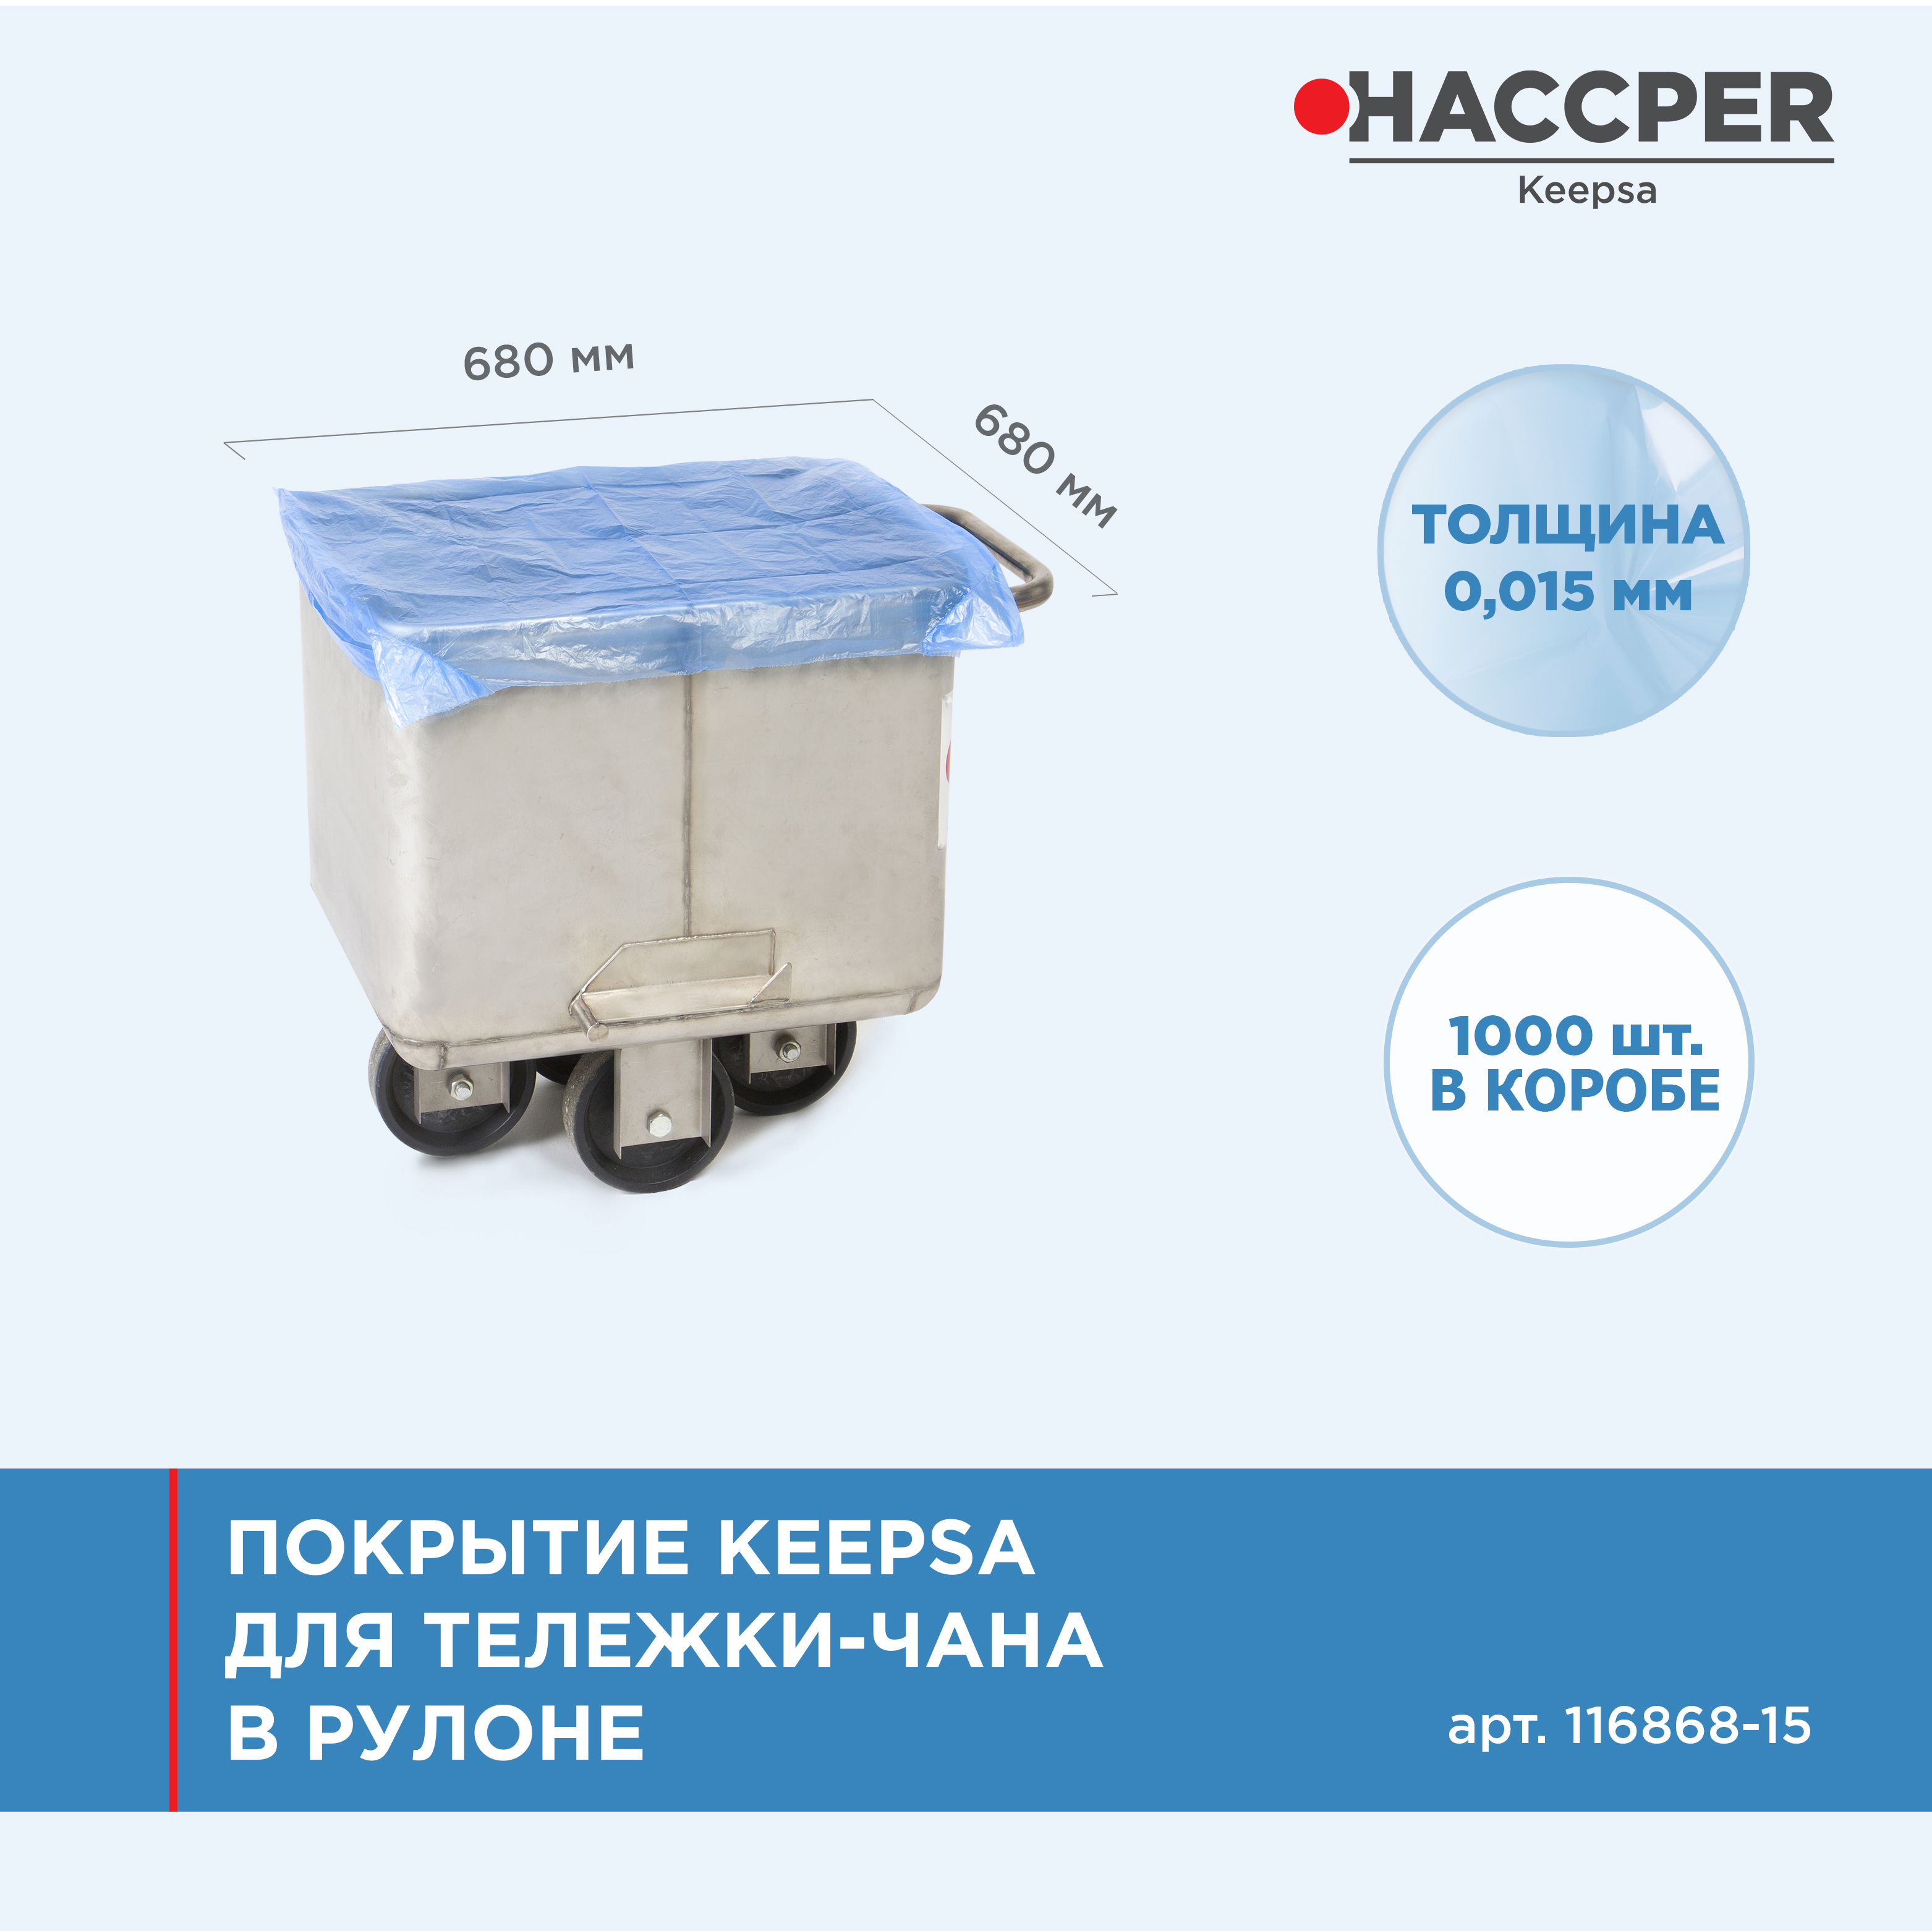 Покрытие Haccper Keepsa для тележки-чана 680*680  мм